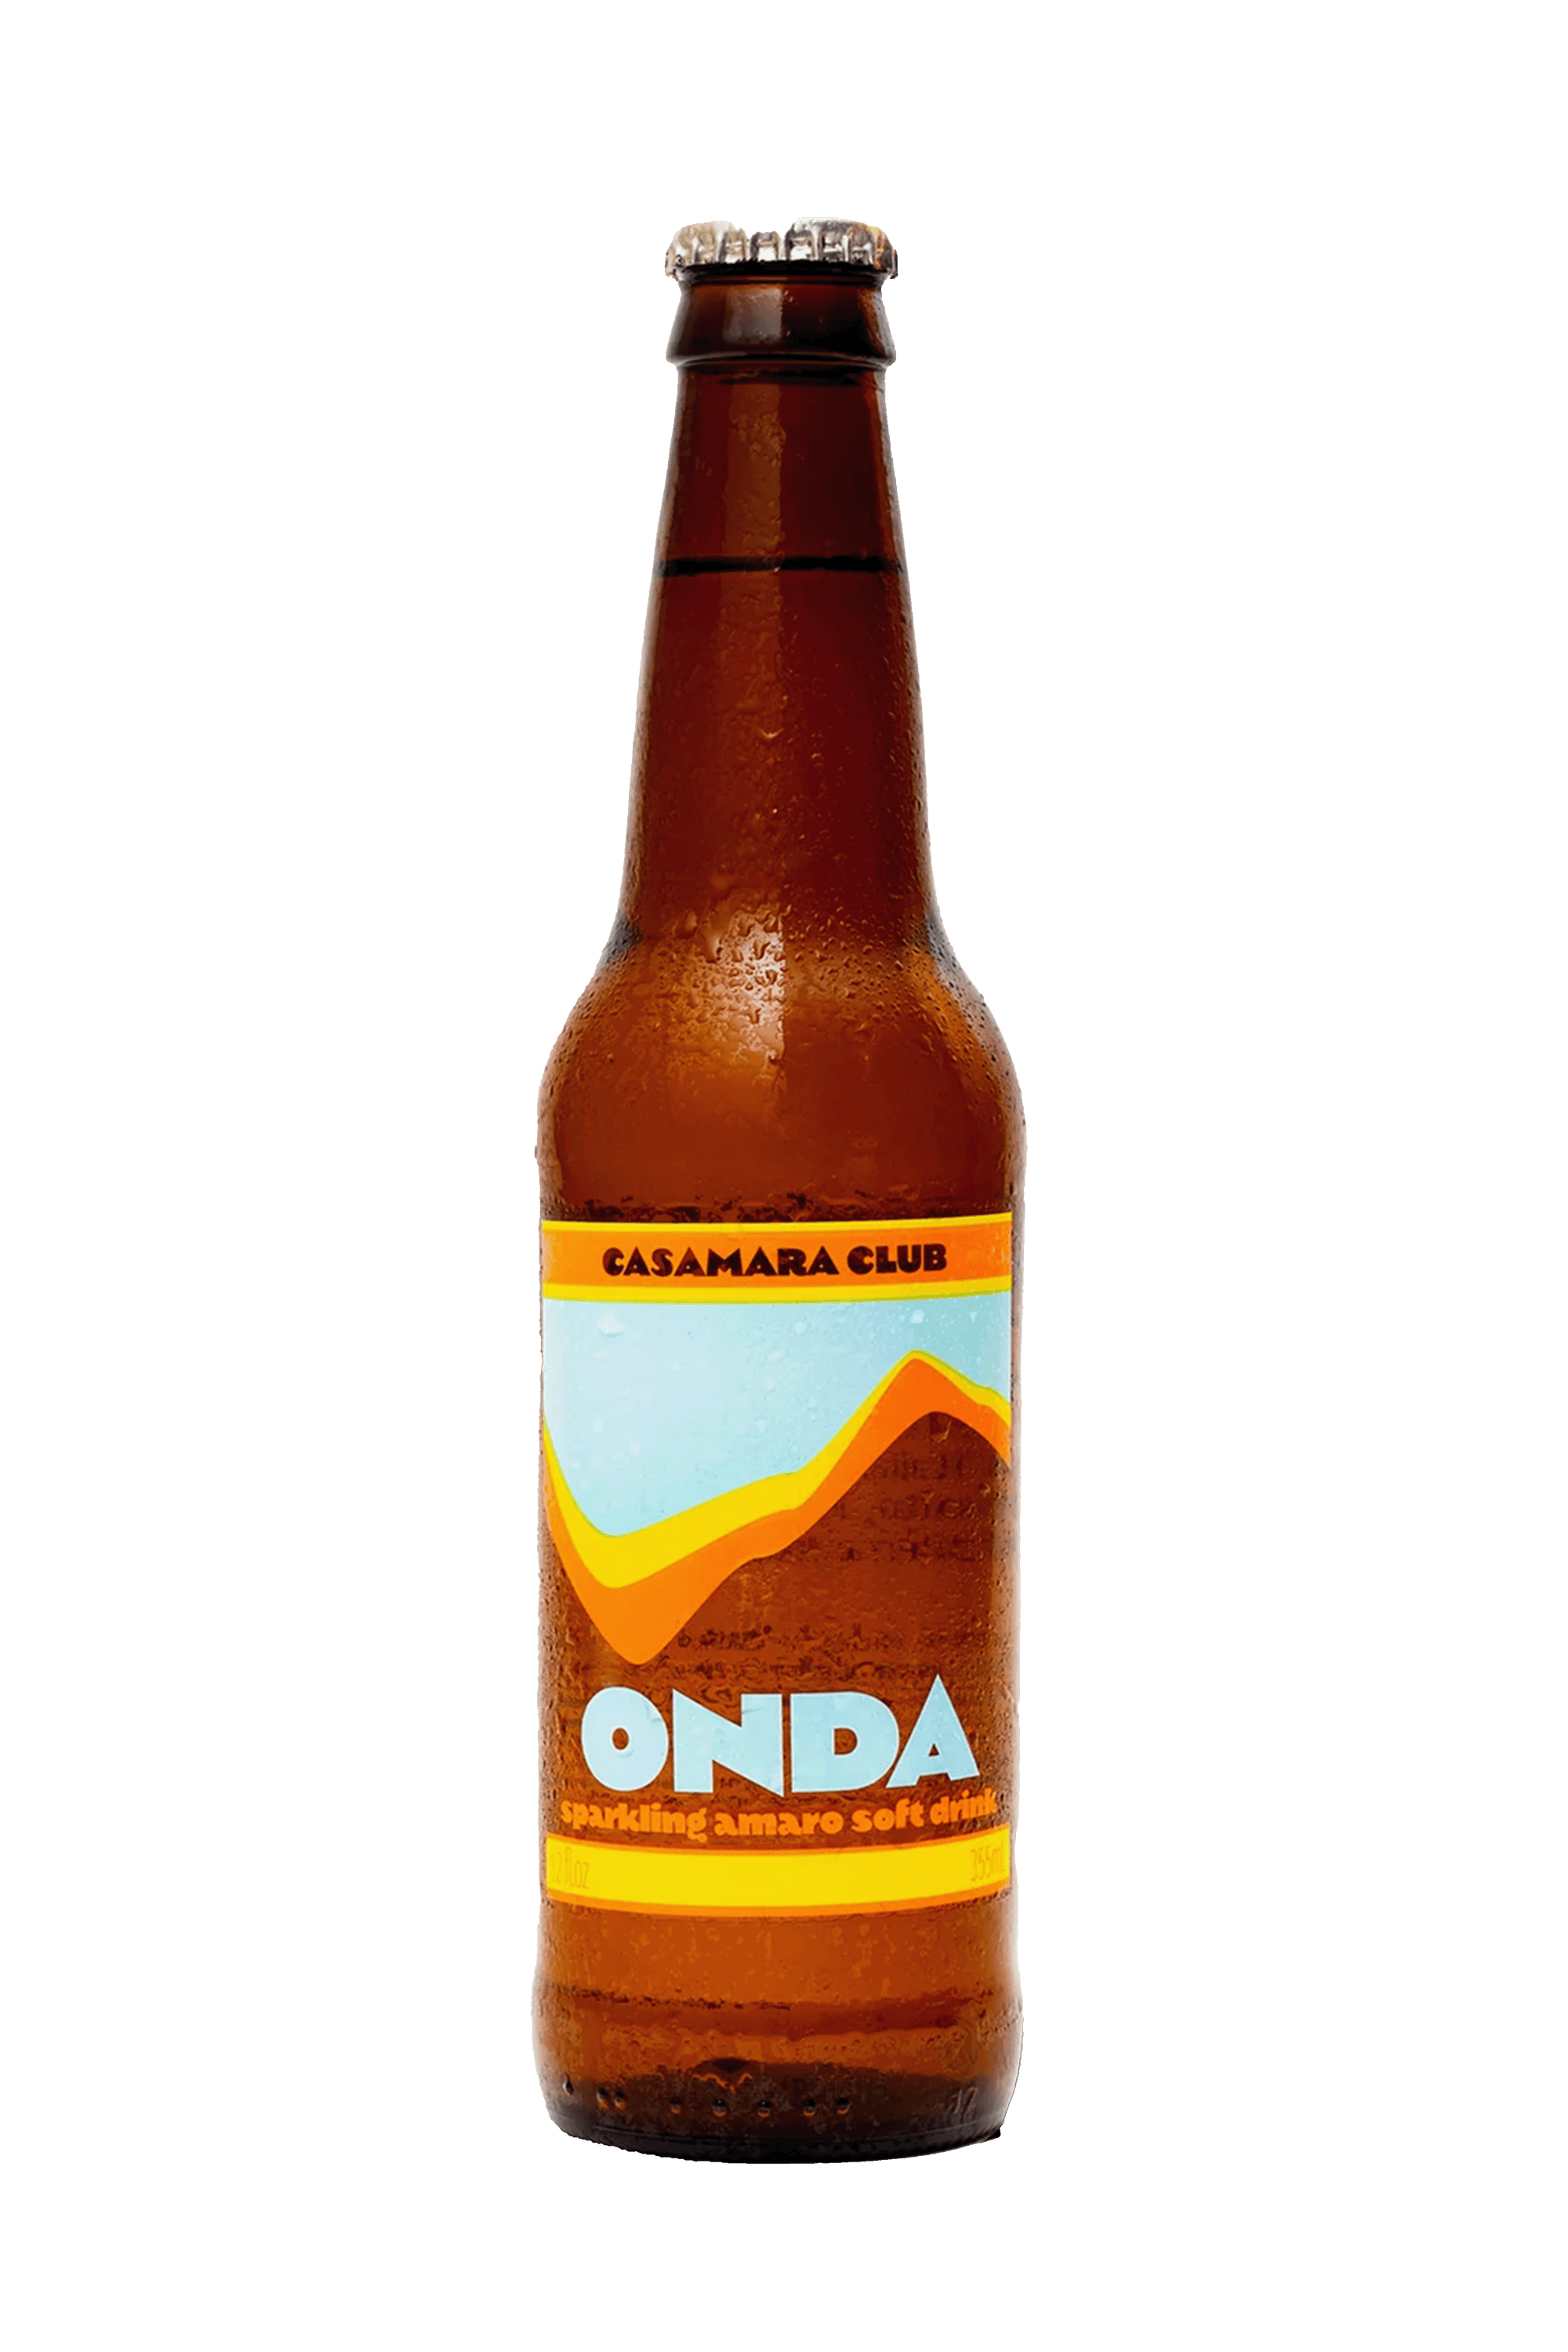 Casamara Club 'Onda'